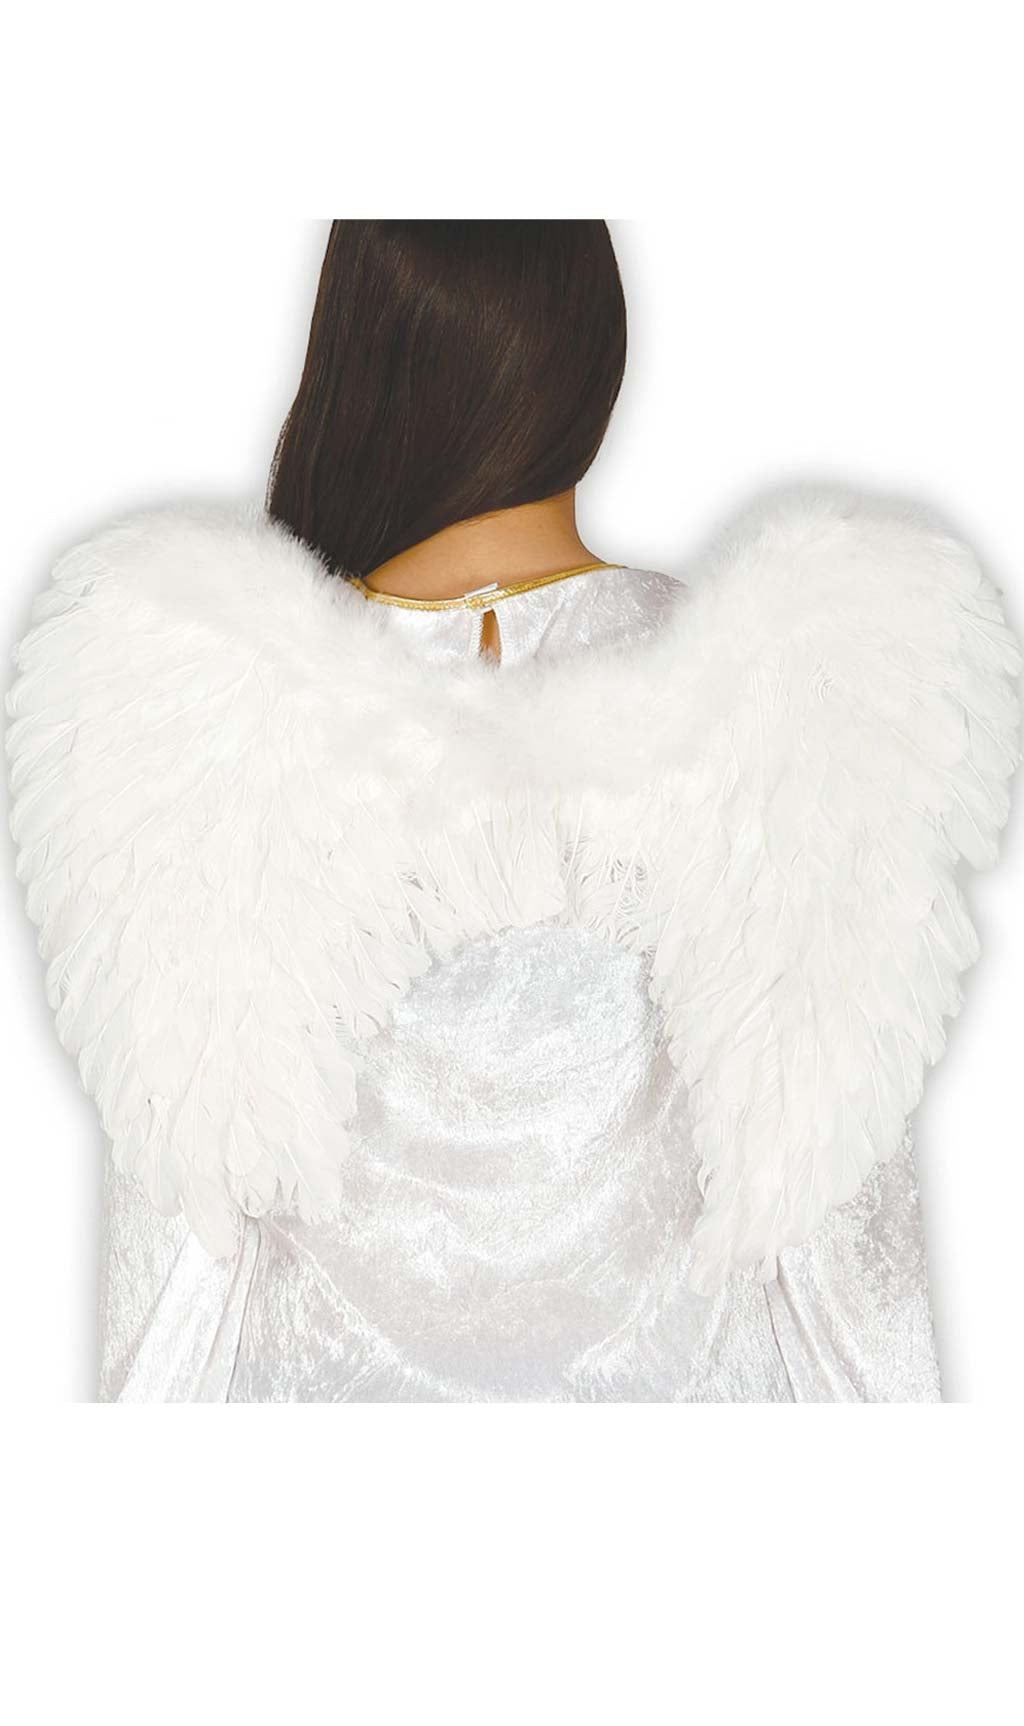 Las mejores ofertas en Disfraz blanca ángel Alas, Alas